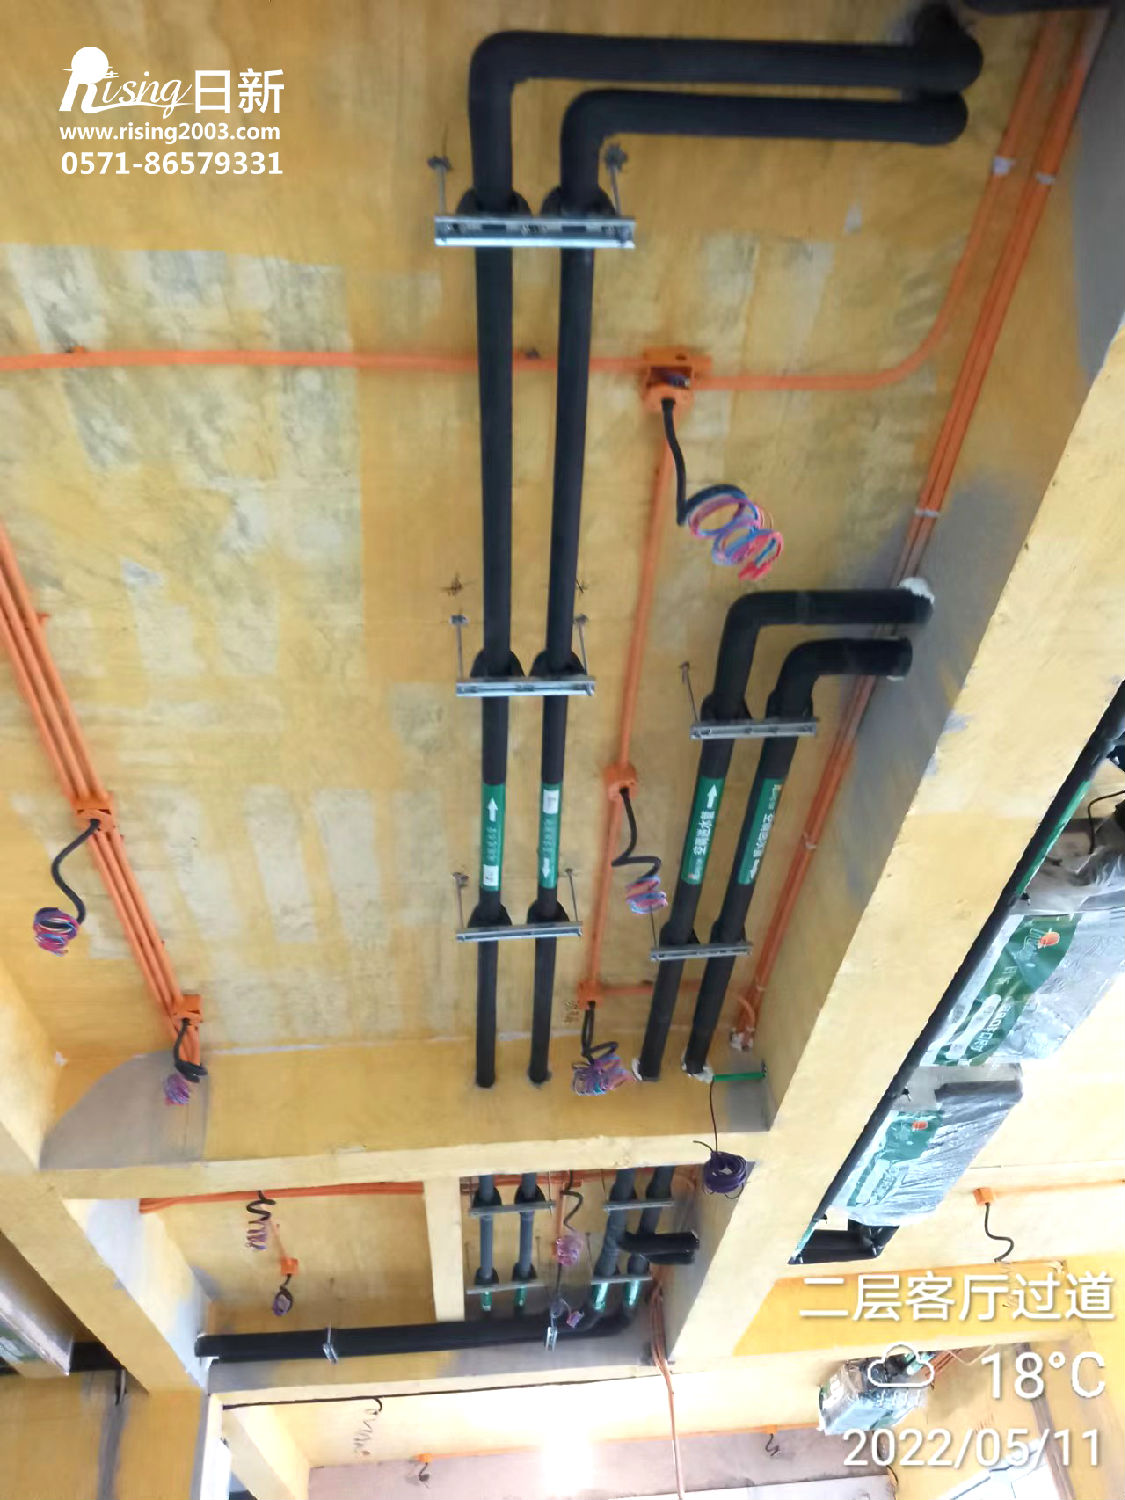 千岛湖希尔顿度假村风冷热泵系统项目空调阶段【日新环境】